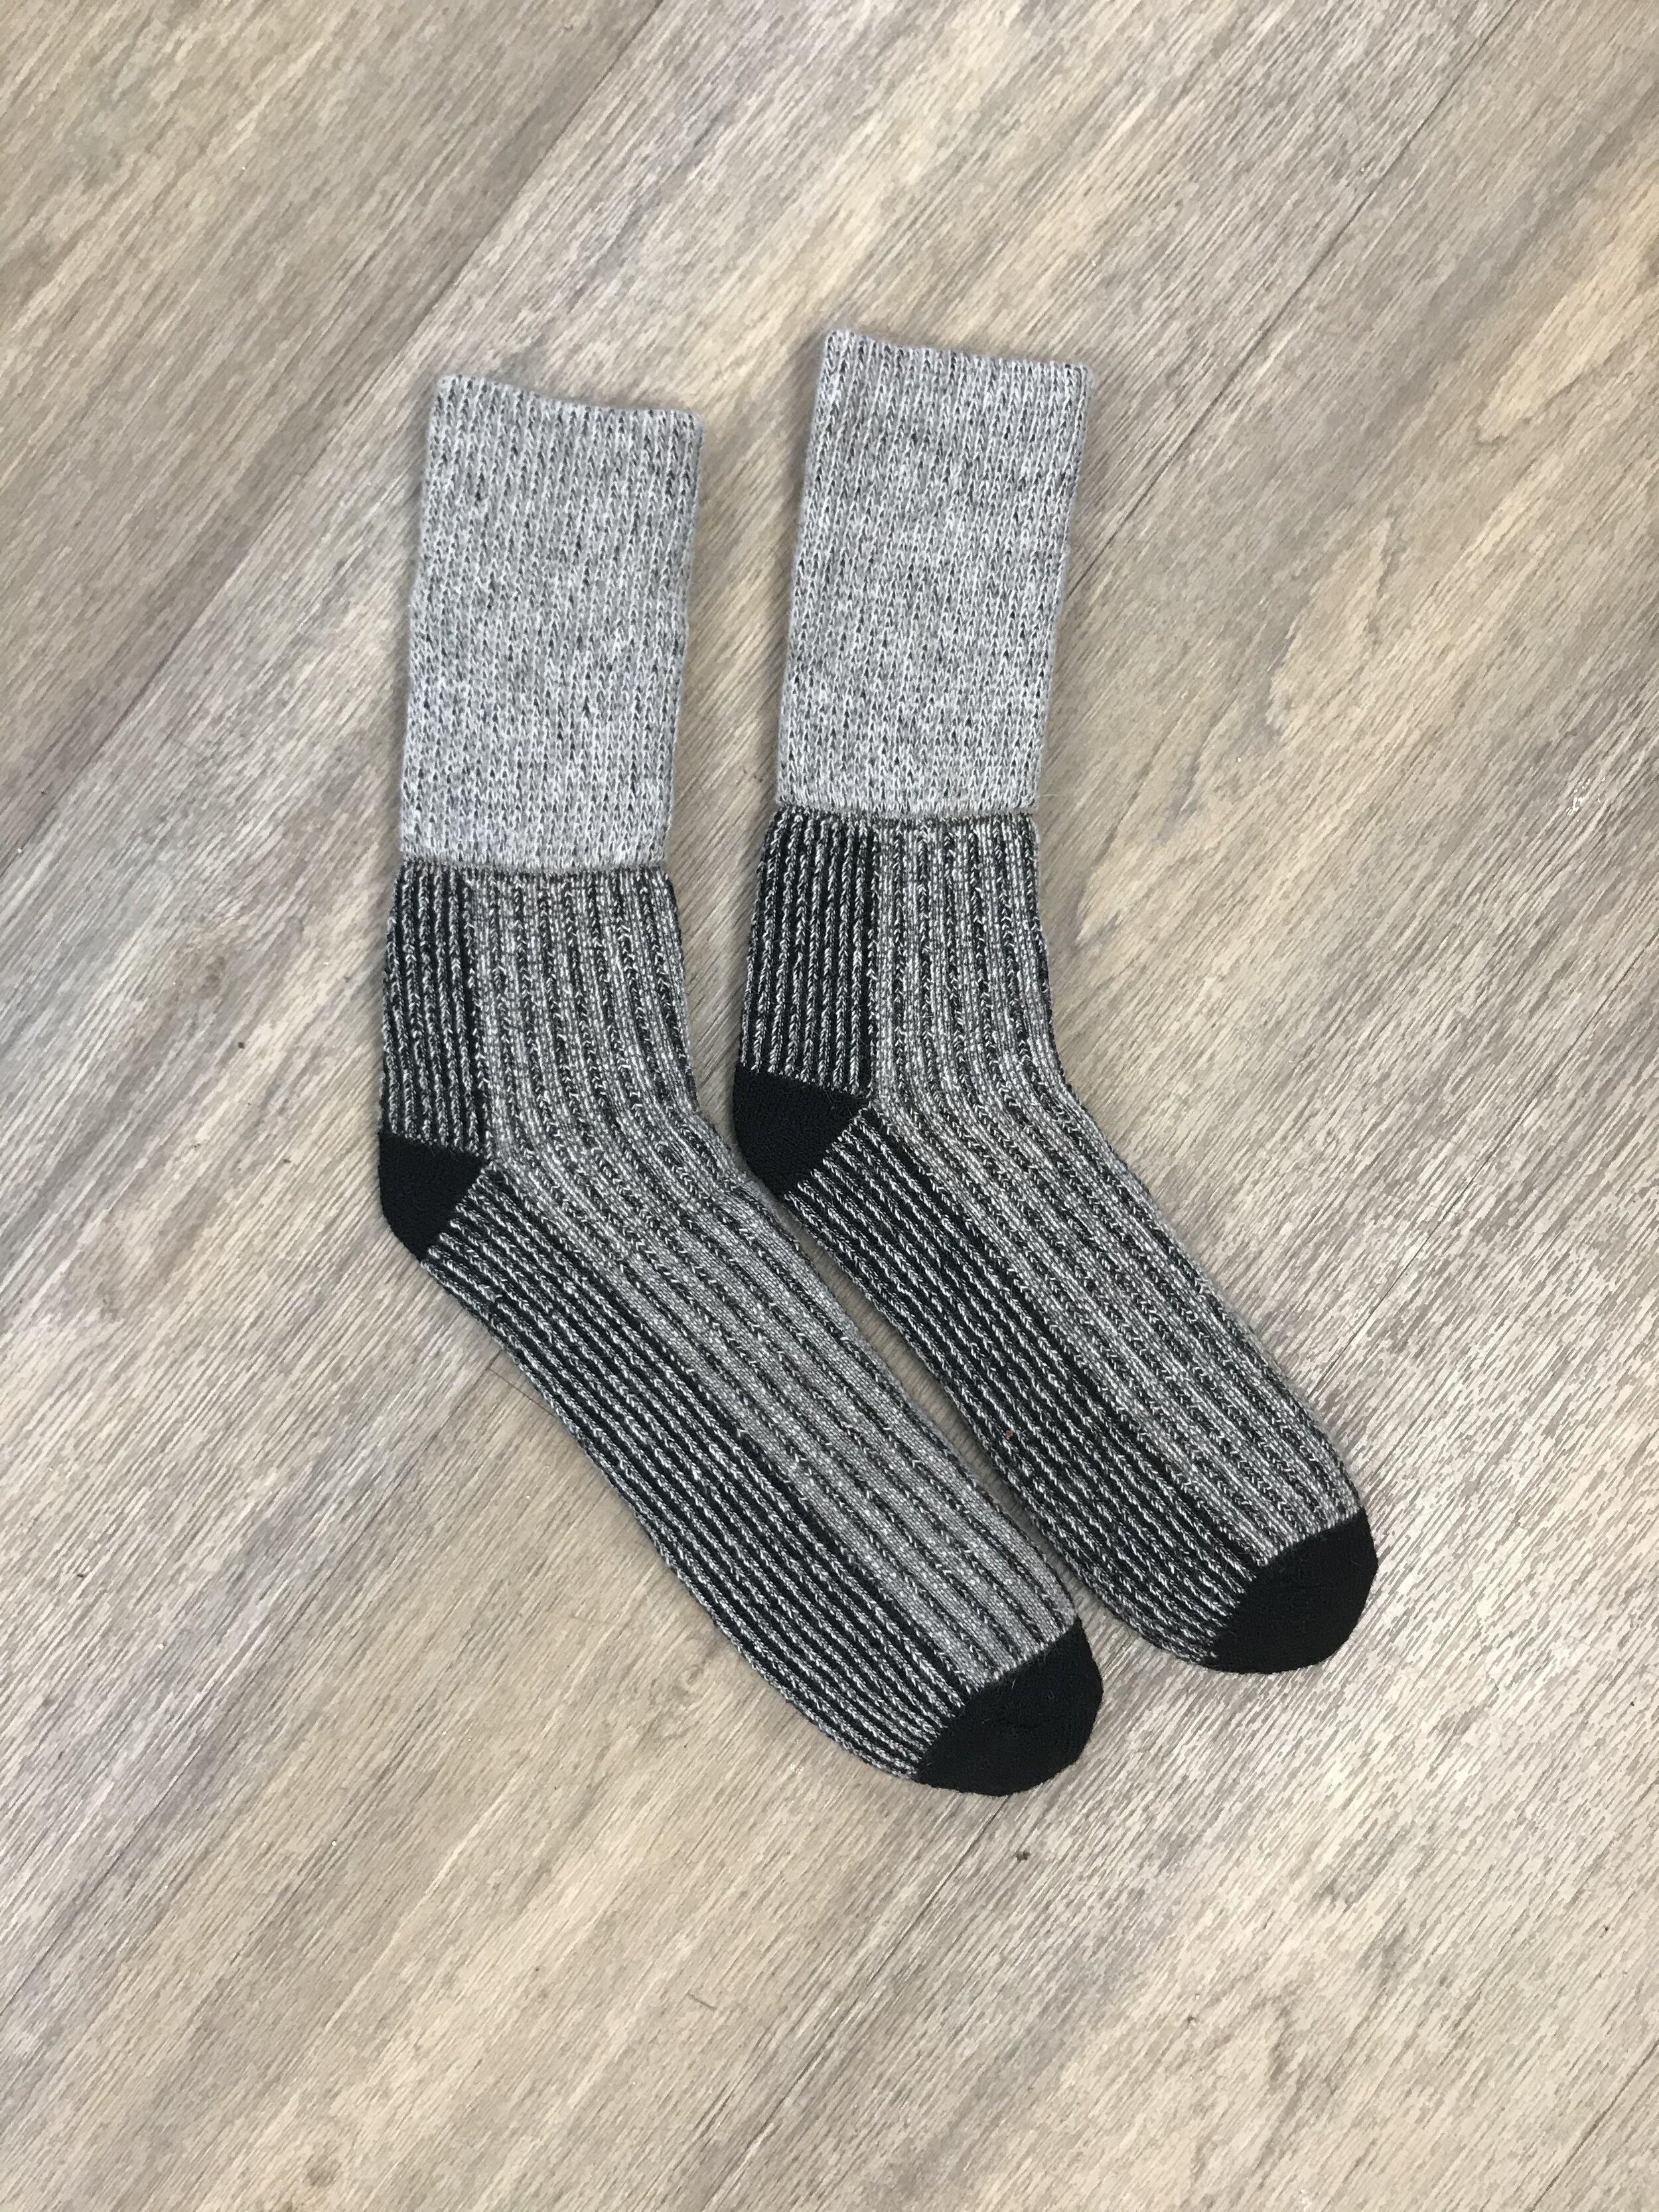 New Zealand Possum Fur Merino Wool Knitwear Slipper Socks 